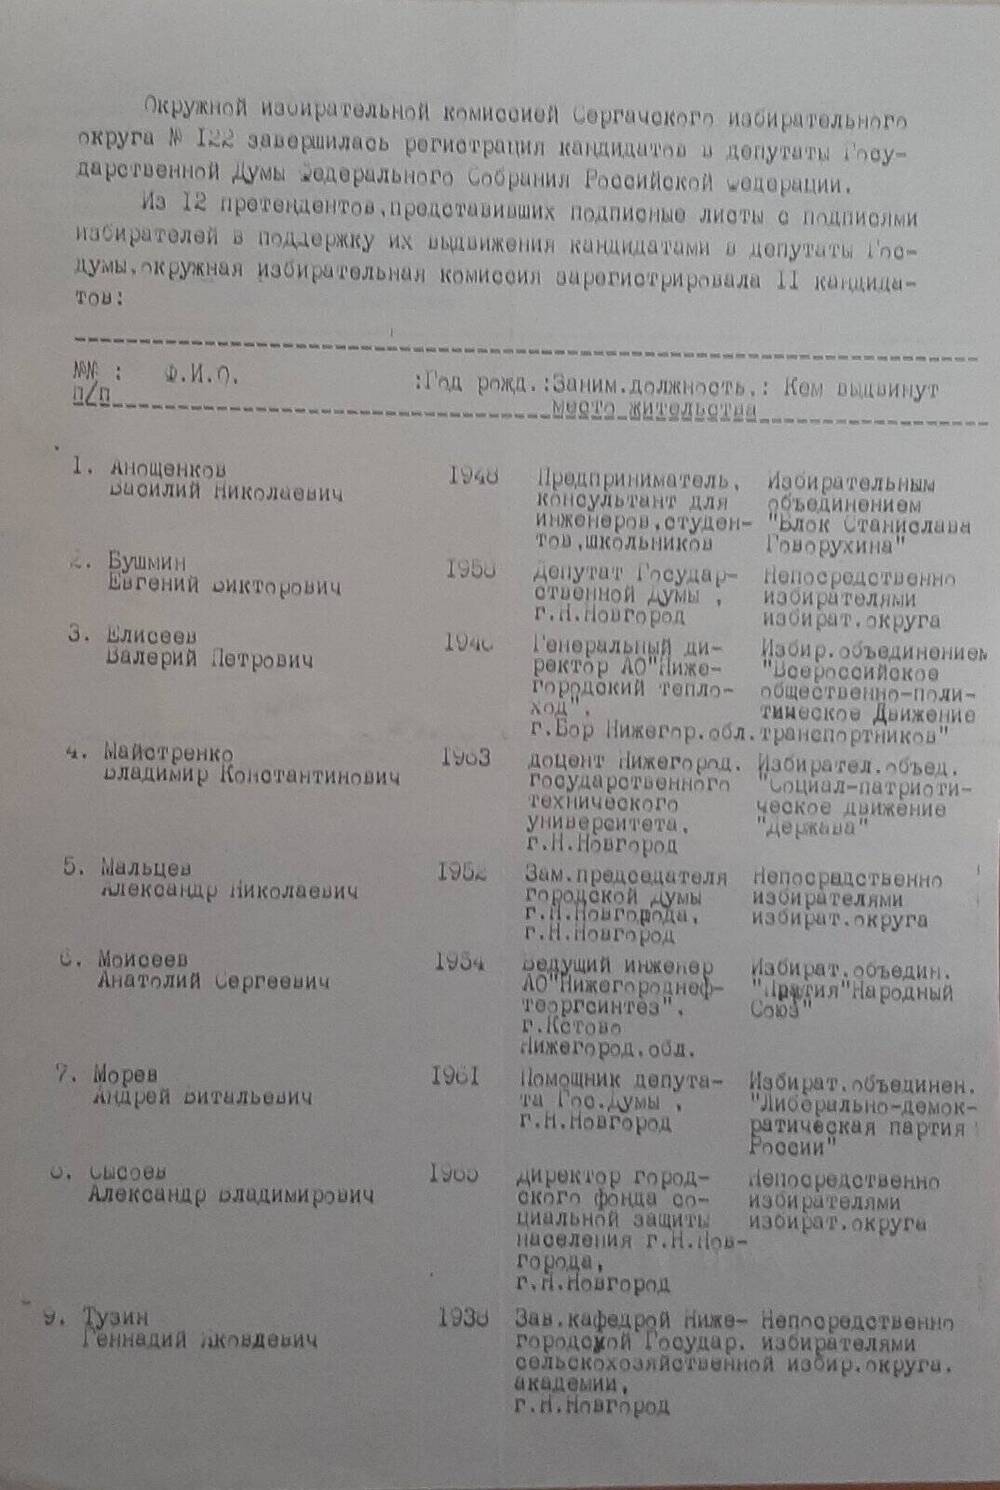 Список кандидатов в депутаты Госдумы по Сергачскому одномандатному округу